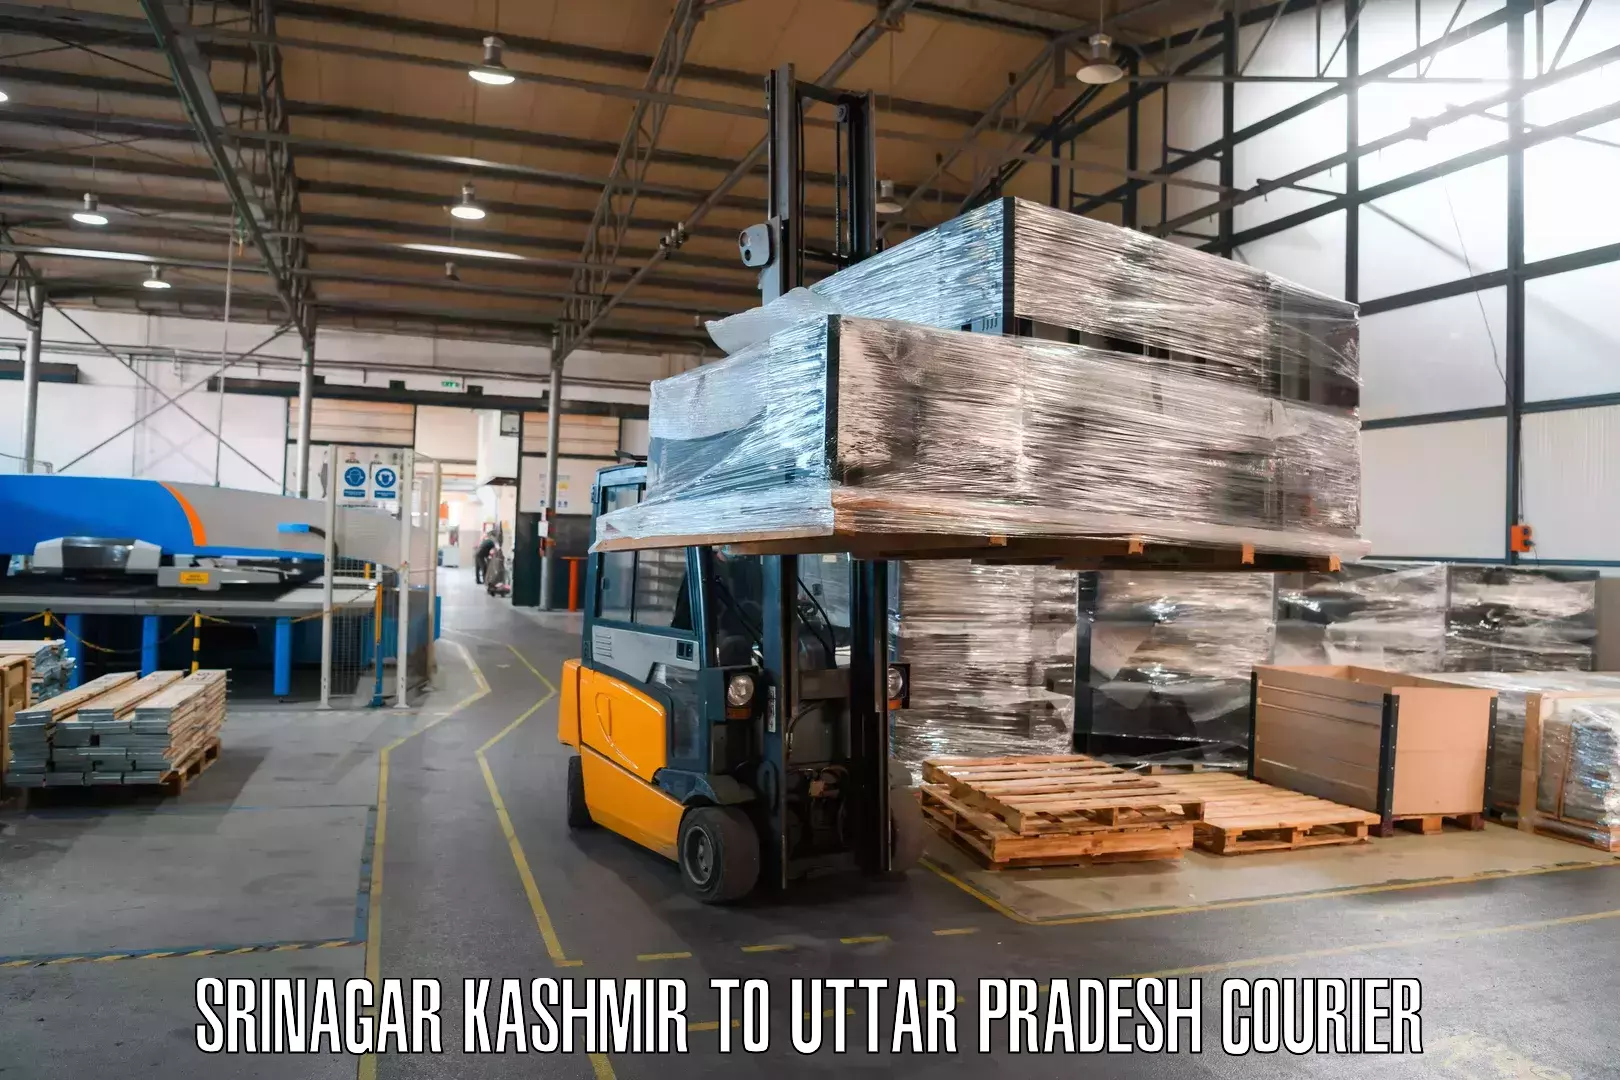 Dynamic courier operations Srinagar Kashmir to Gauri Bazar